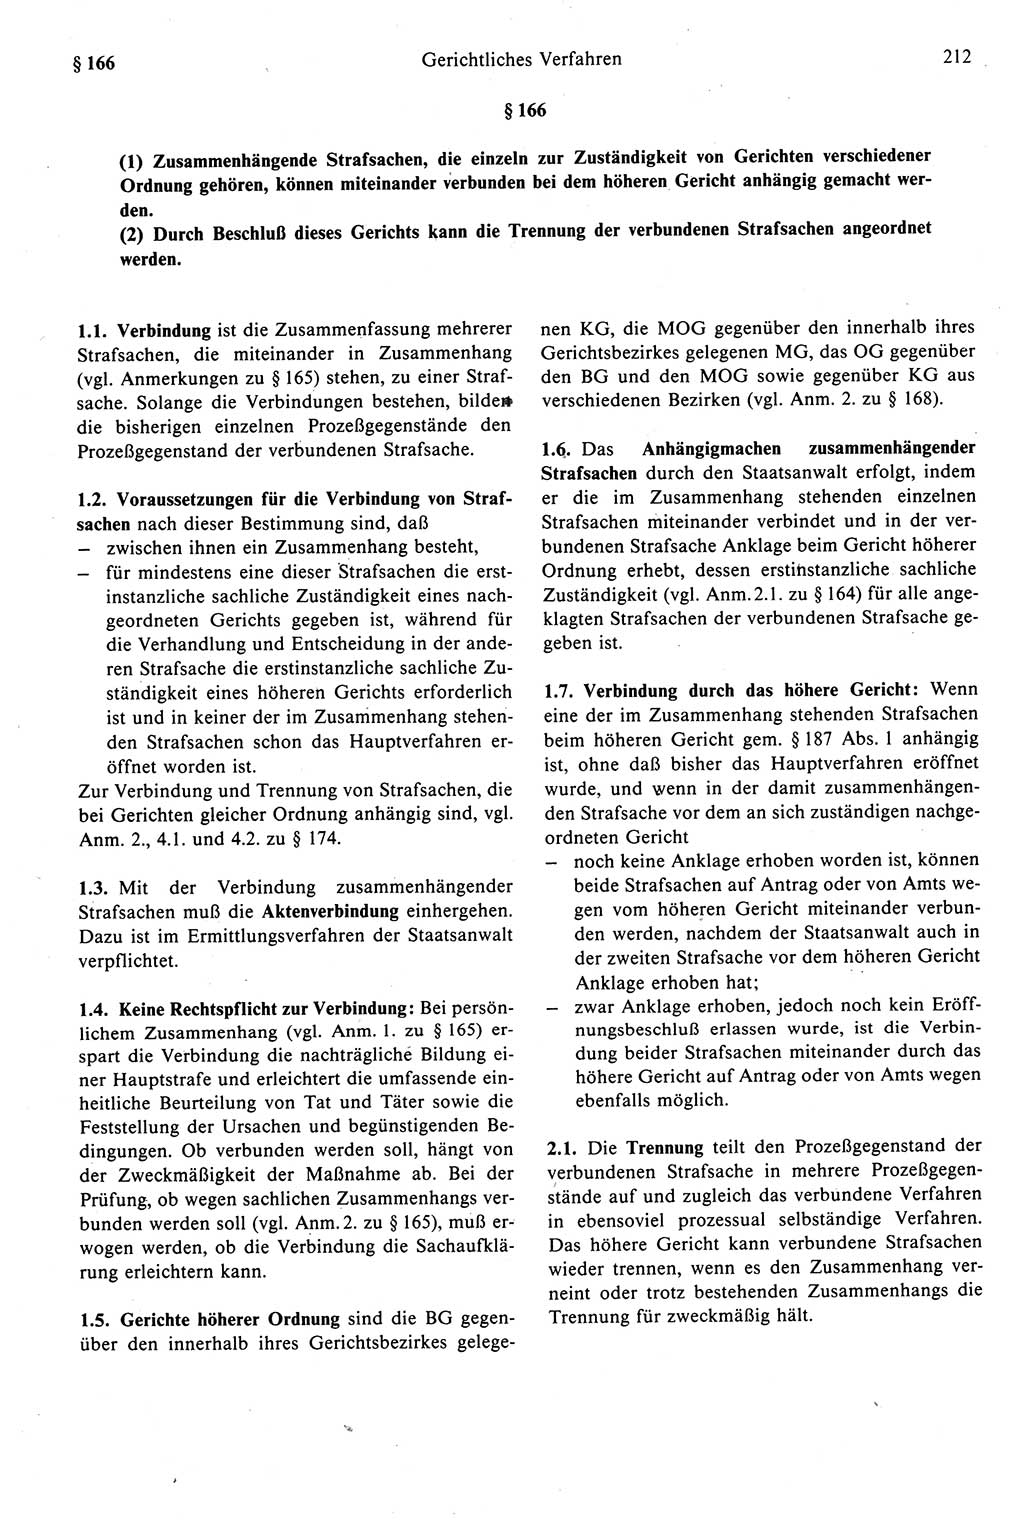 Strafprozeßrecht der DDR (Deutsche Demokratische Republik), Kommentar zur Strafprozeßordnung (StPO) 1989, Seite 212 (Strafprozeßr. DDR Komm. StPO 1989, S. 212)